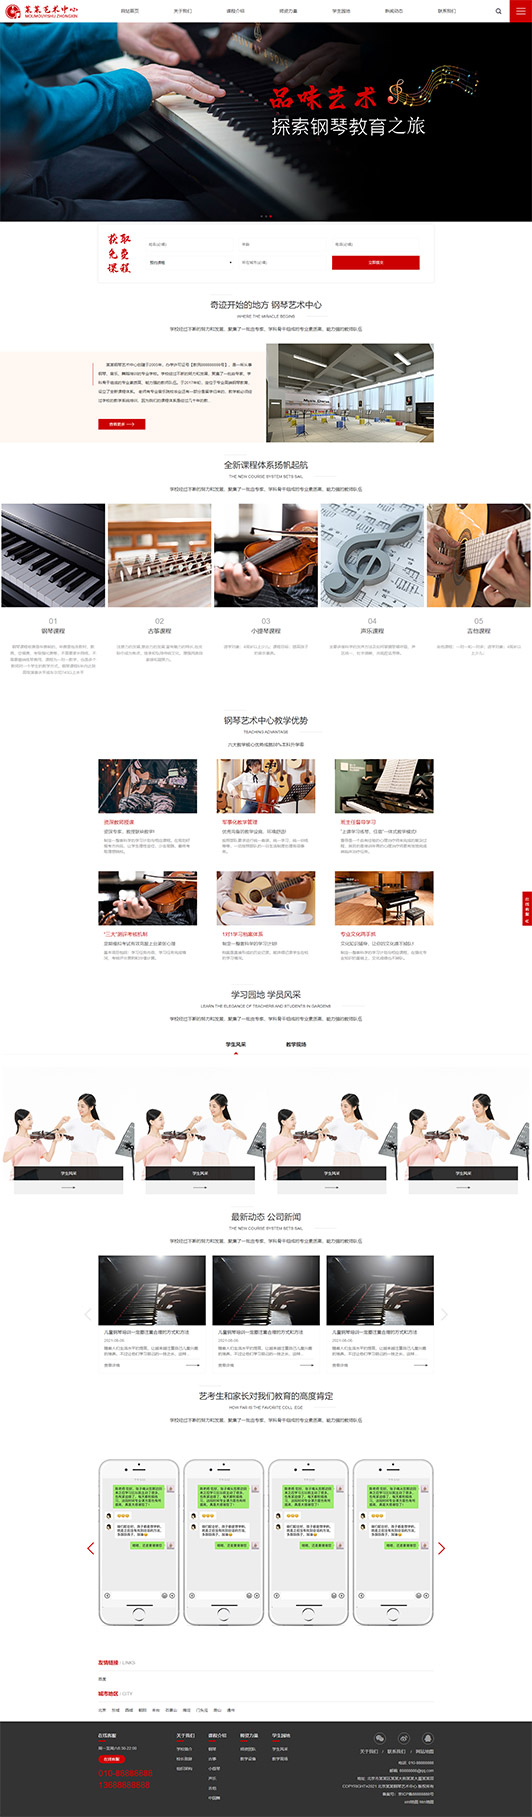 阿坝钢琴艺术培训公司响应式企业网站